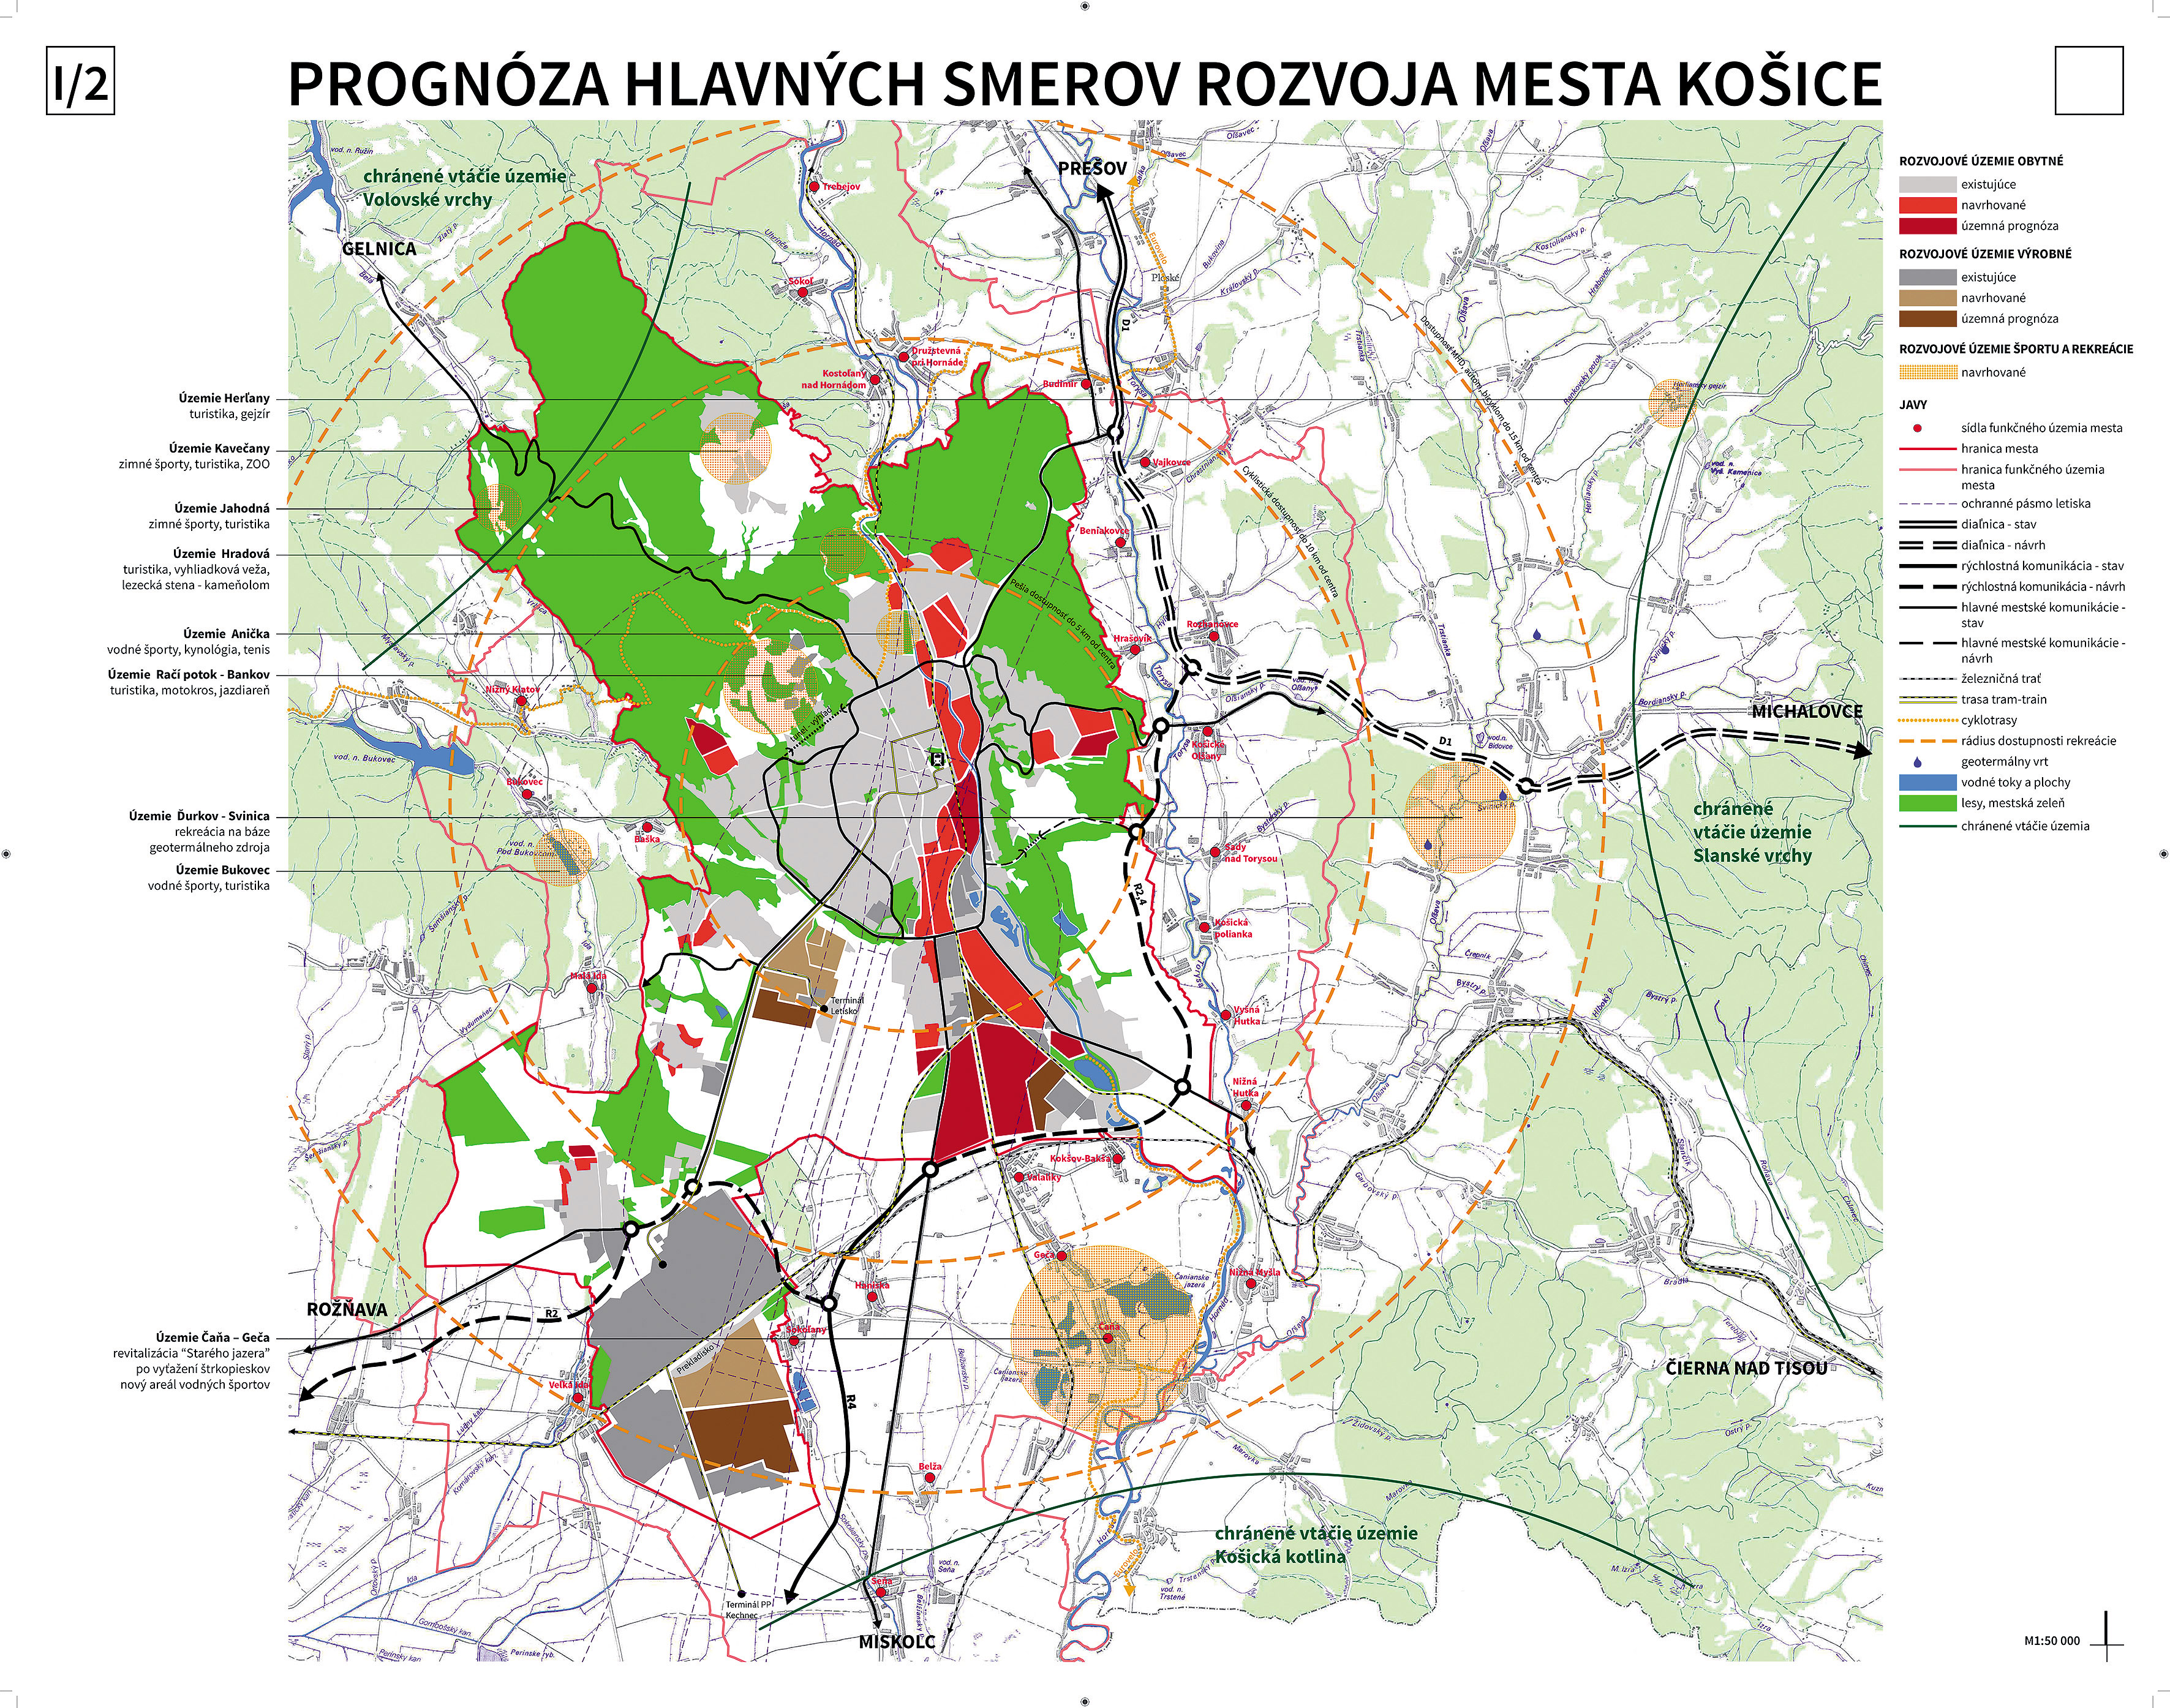 Víťazný návrh skupiny Arka: prognóza hlavných smerov rozvoja mesta Košice